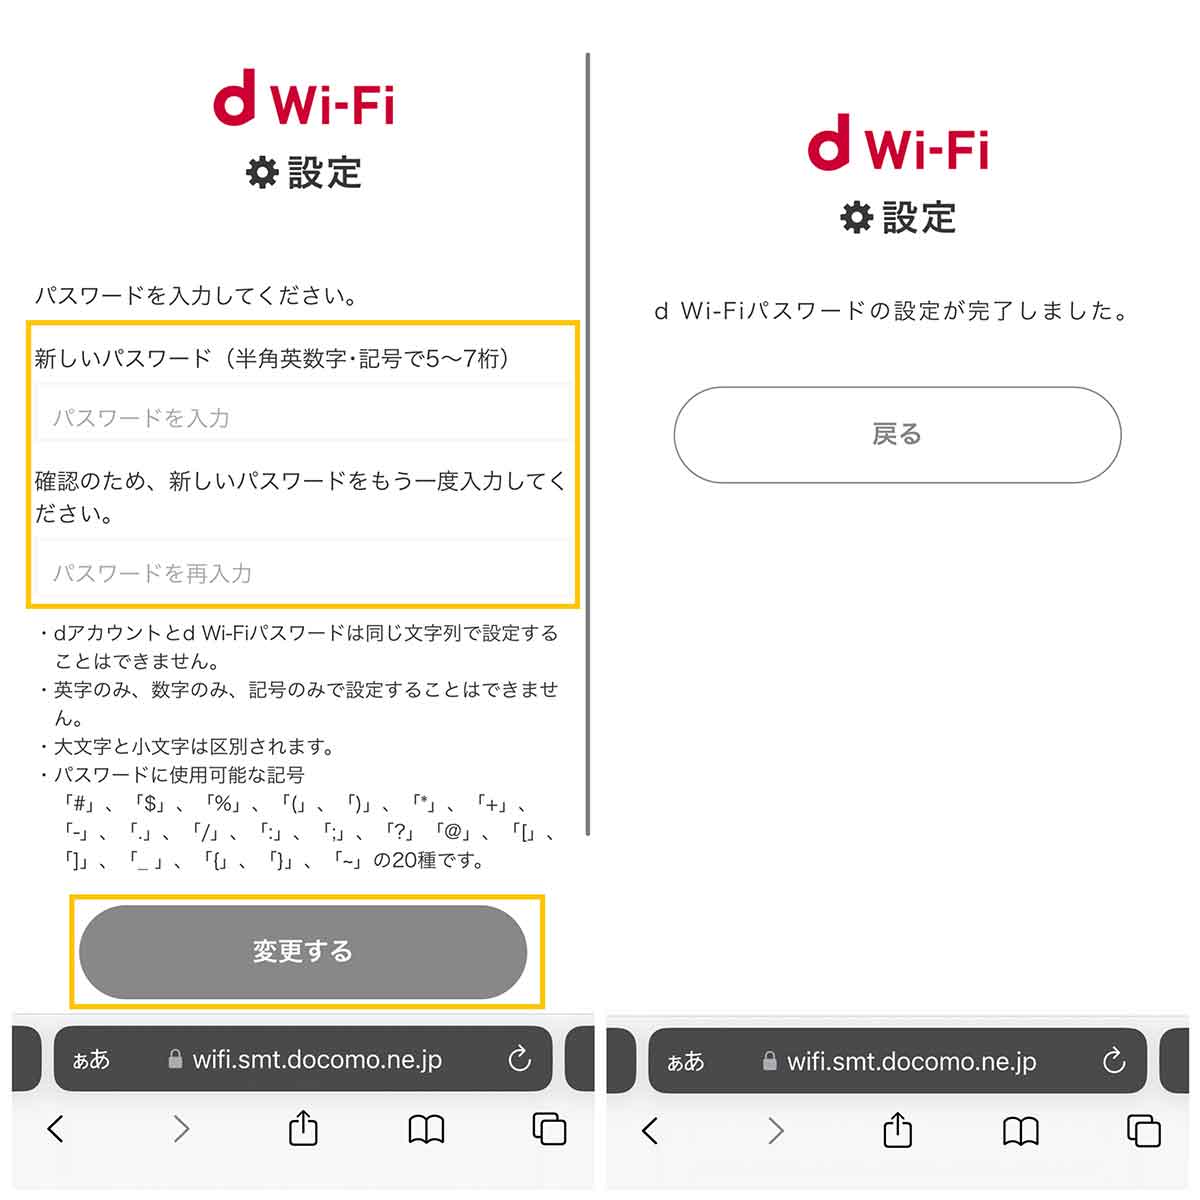 ドコモの無料Wi-Fi「d Wi-Fi」も利用可能：ドコモユーザー以外も無料5